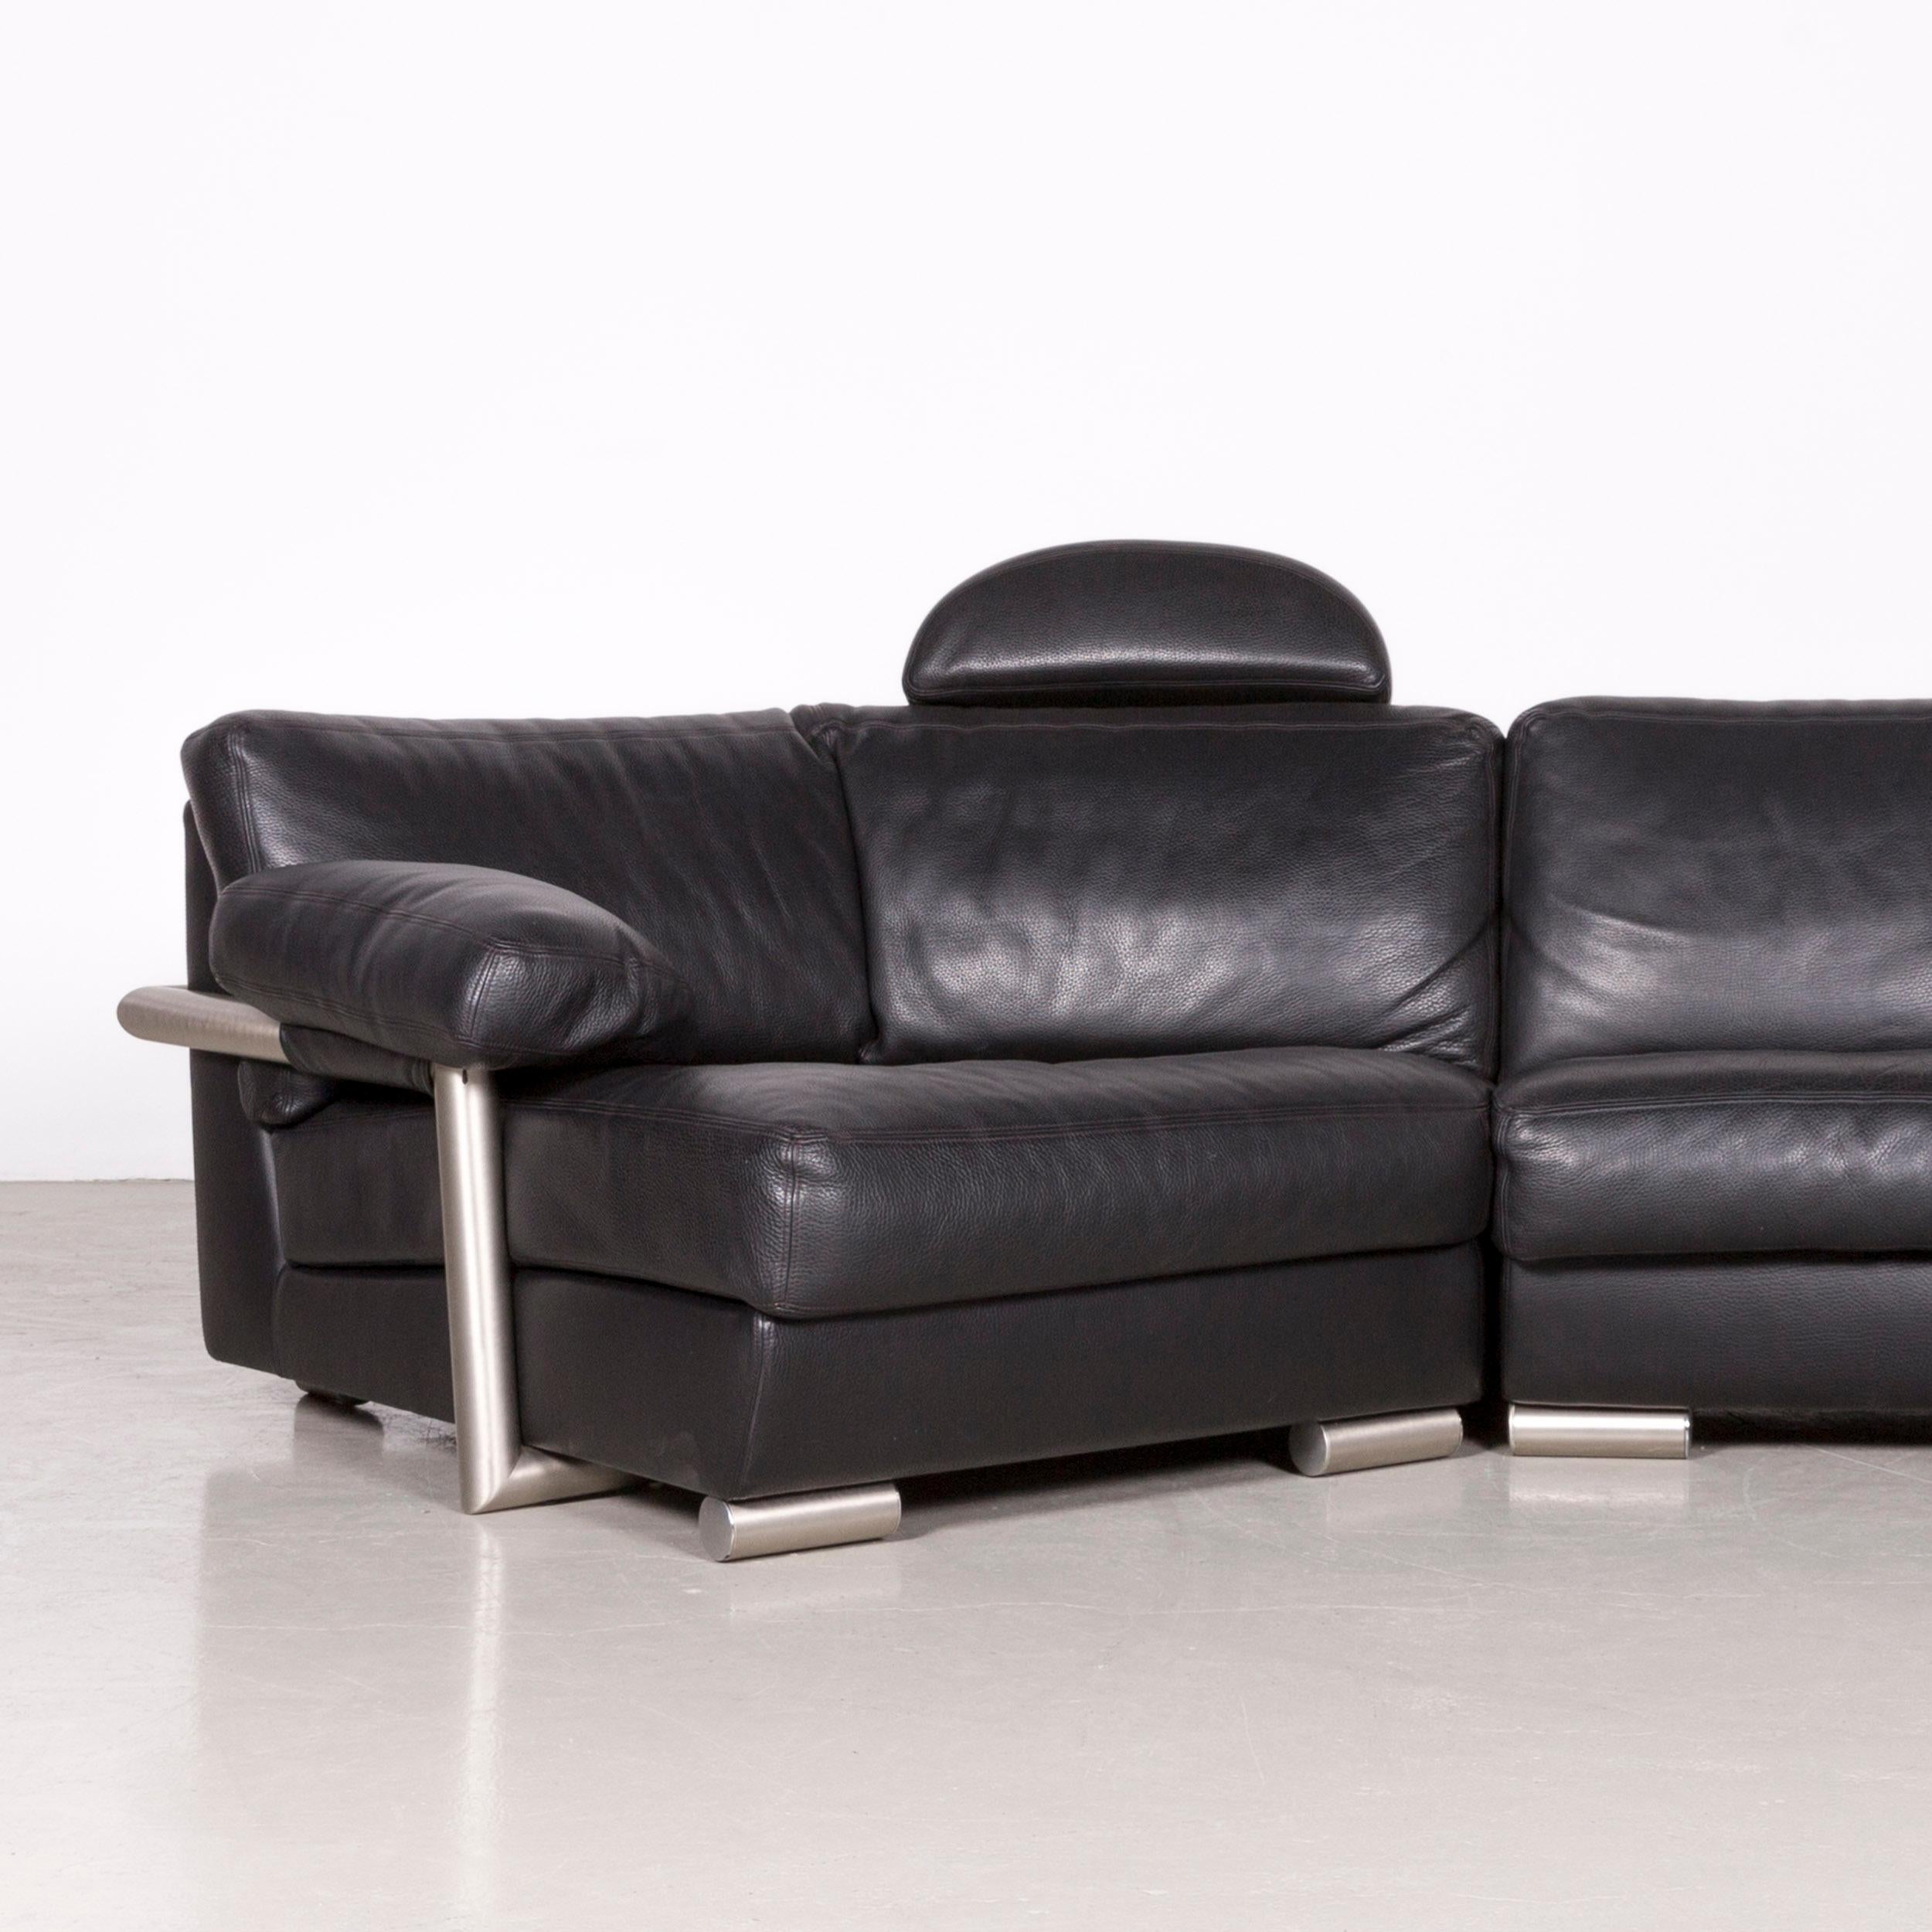 Artanova Medea Designer Black Leather Corner Sofa Couch In Good Condition For Sale In Cologne, DE